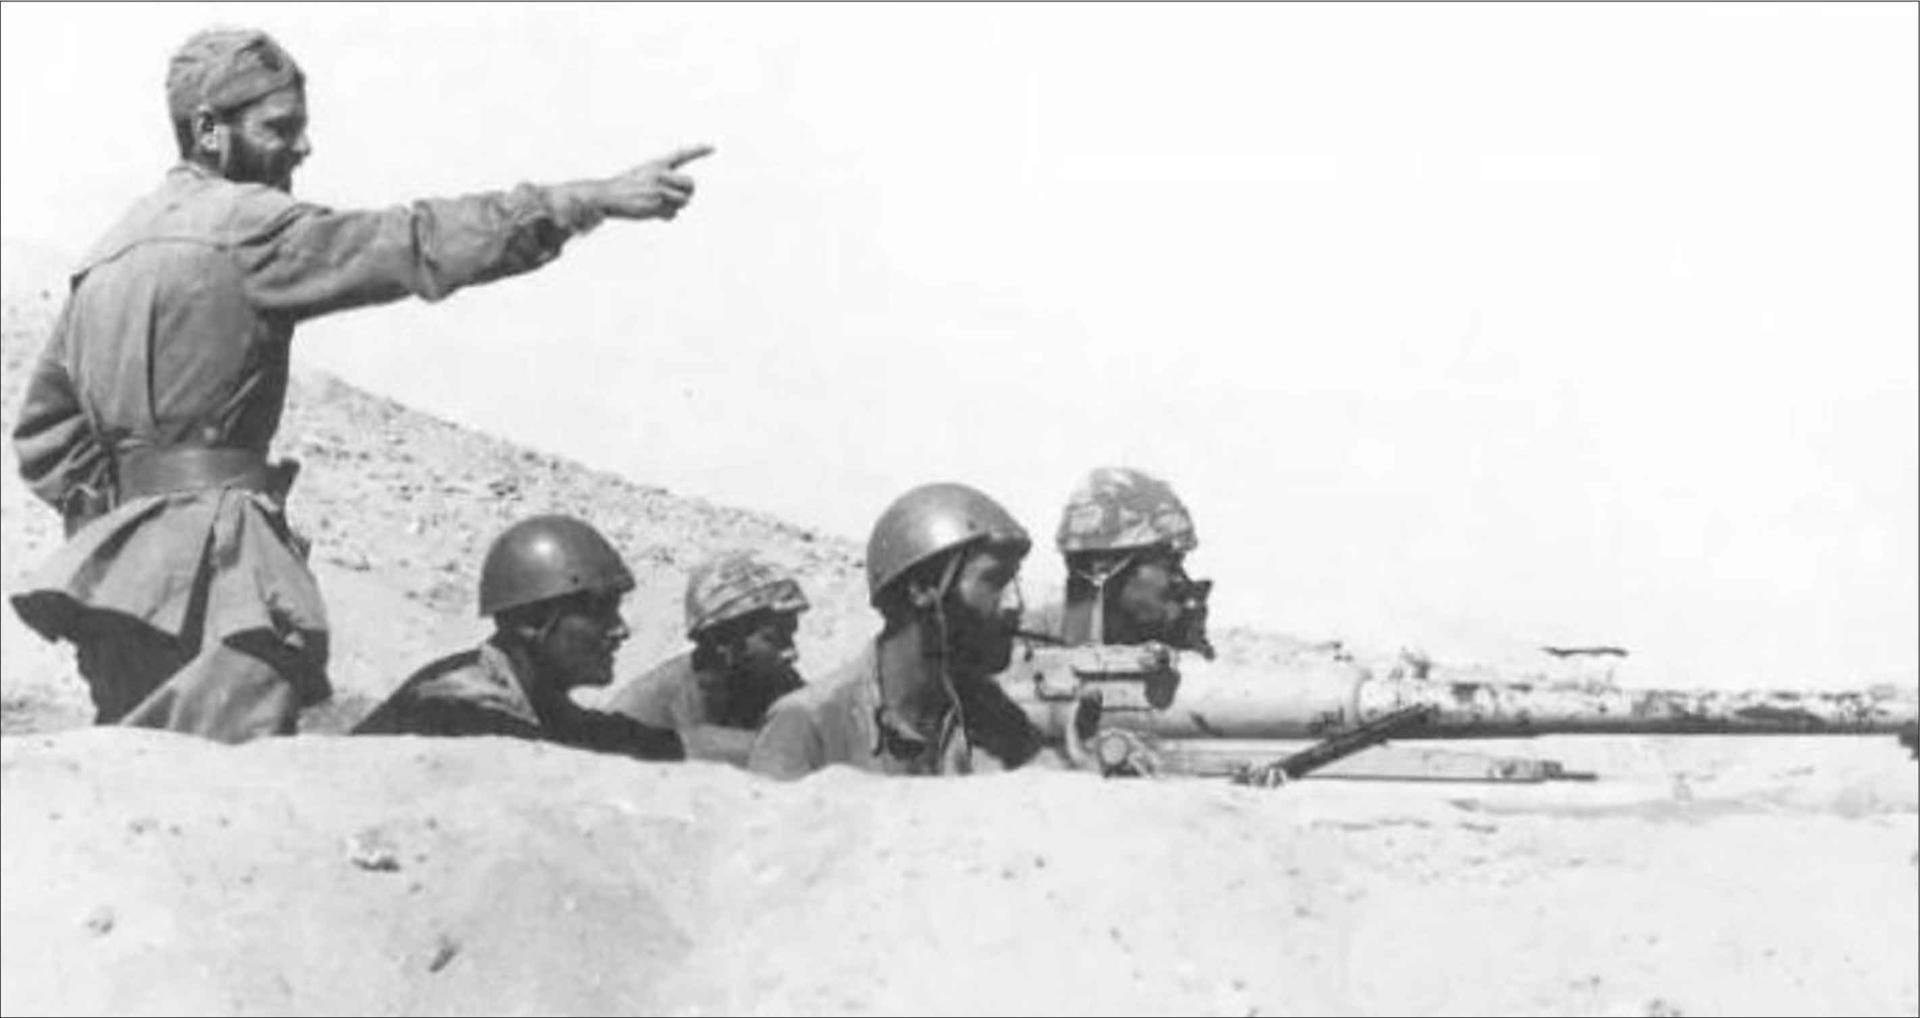 ALTO ADIGE: “I morti snobbati di El Alamein”